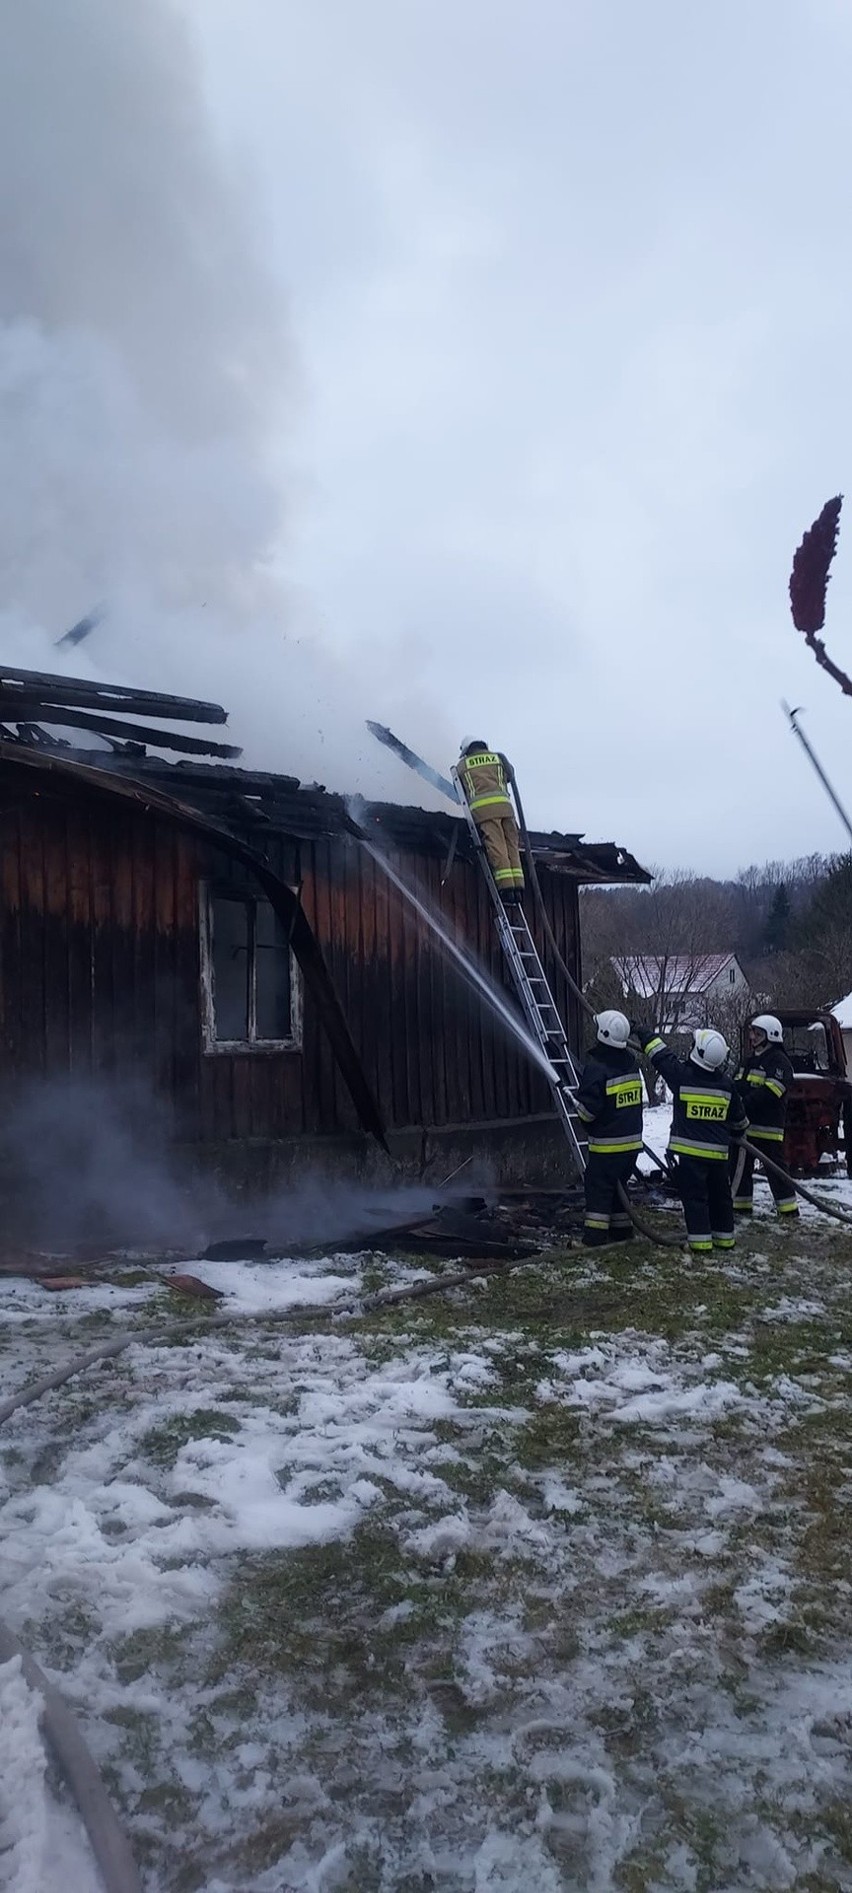 Doszczętnie spłonął dom strażaka z OSP Wojtkowa w pow. bieszczadzkim. Udało mu się wyjść z budynku, ale stracił wszystko [ZDJĘCIA]